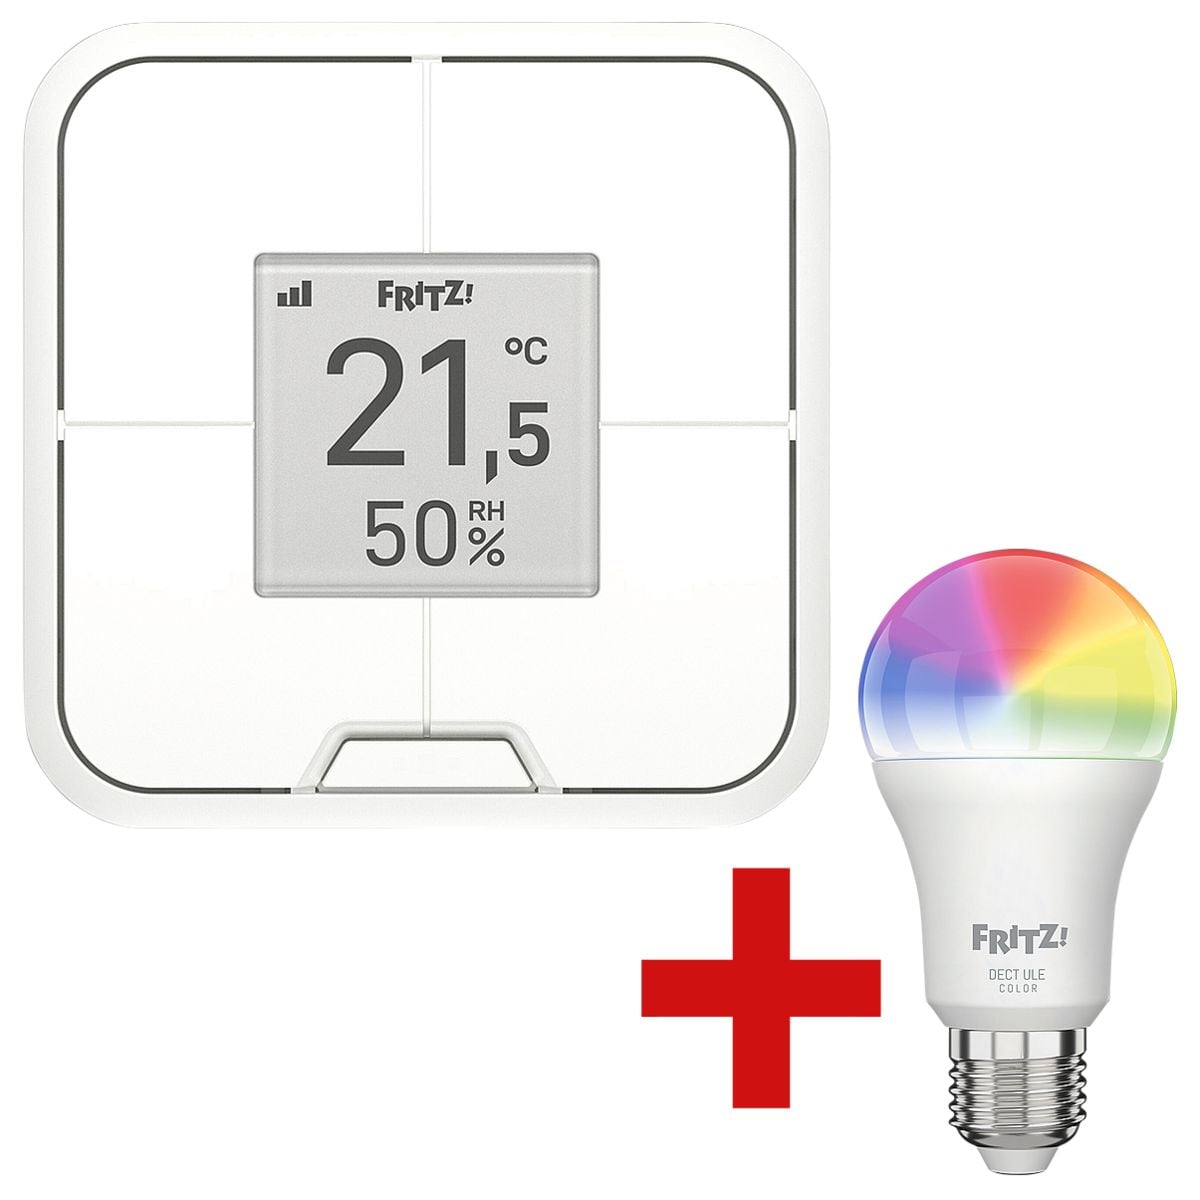 AVM Smart Home Taster FRITZ!DECT 440 inkl. Smart Home LED-Lampe FRITZ!DECT 500